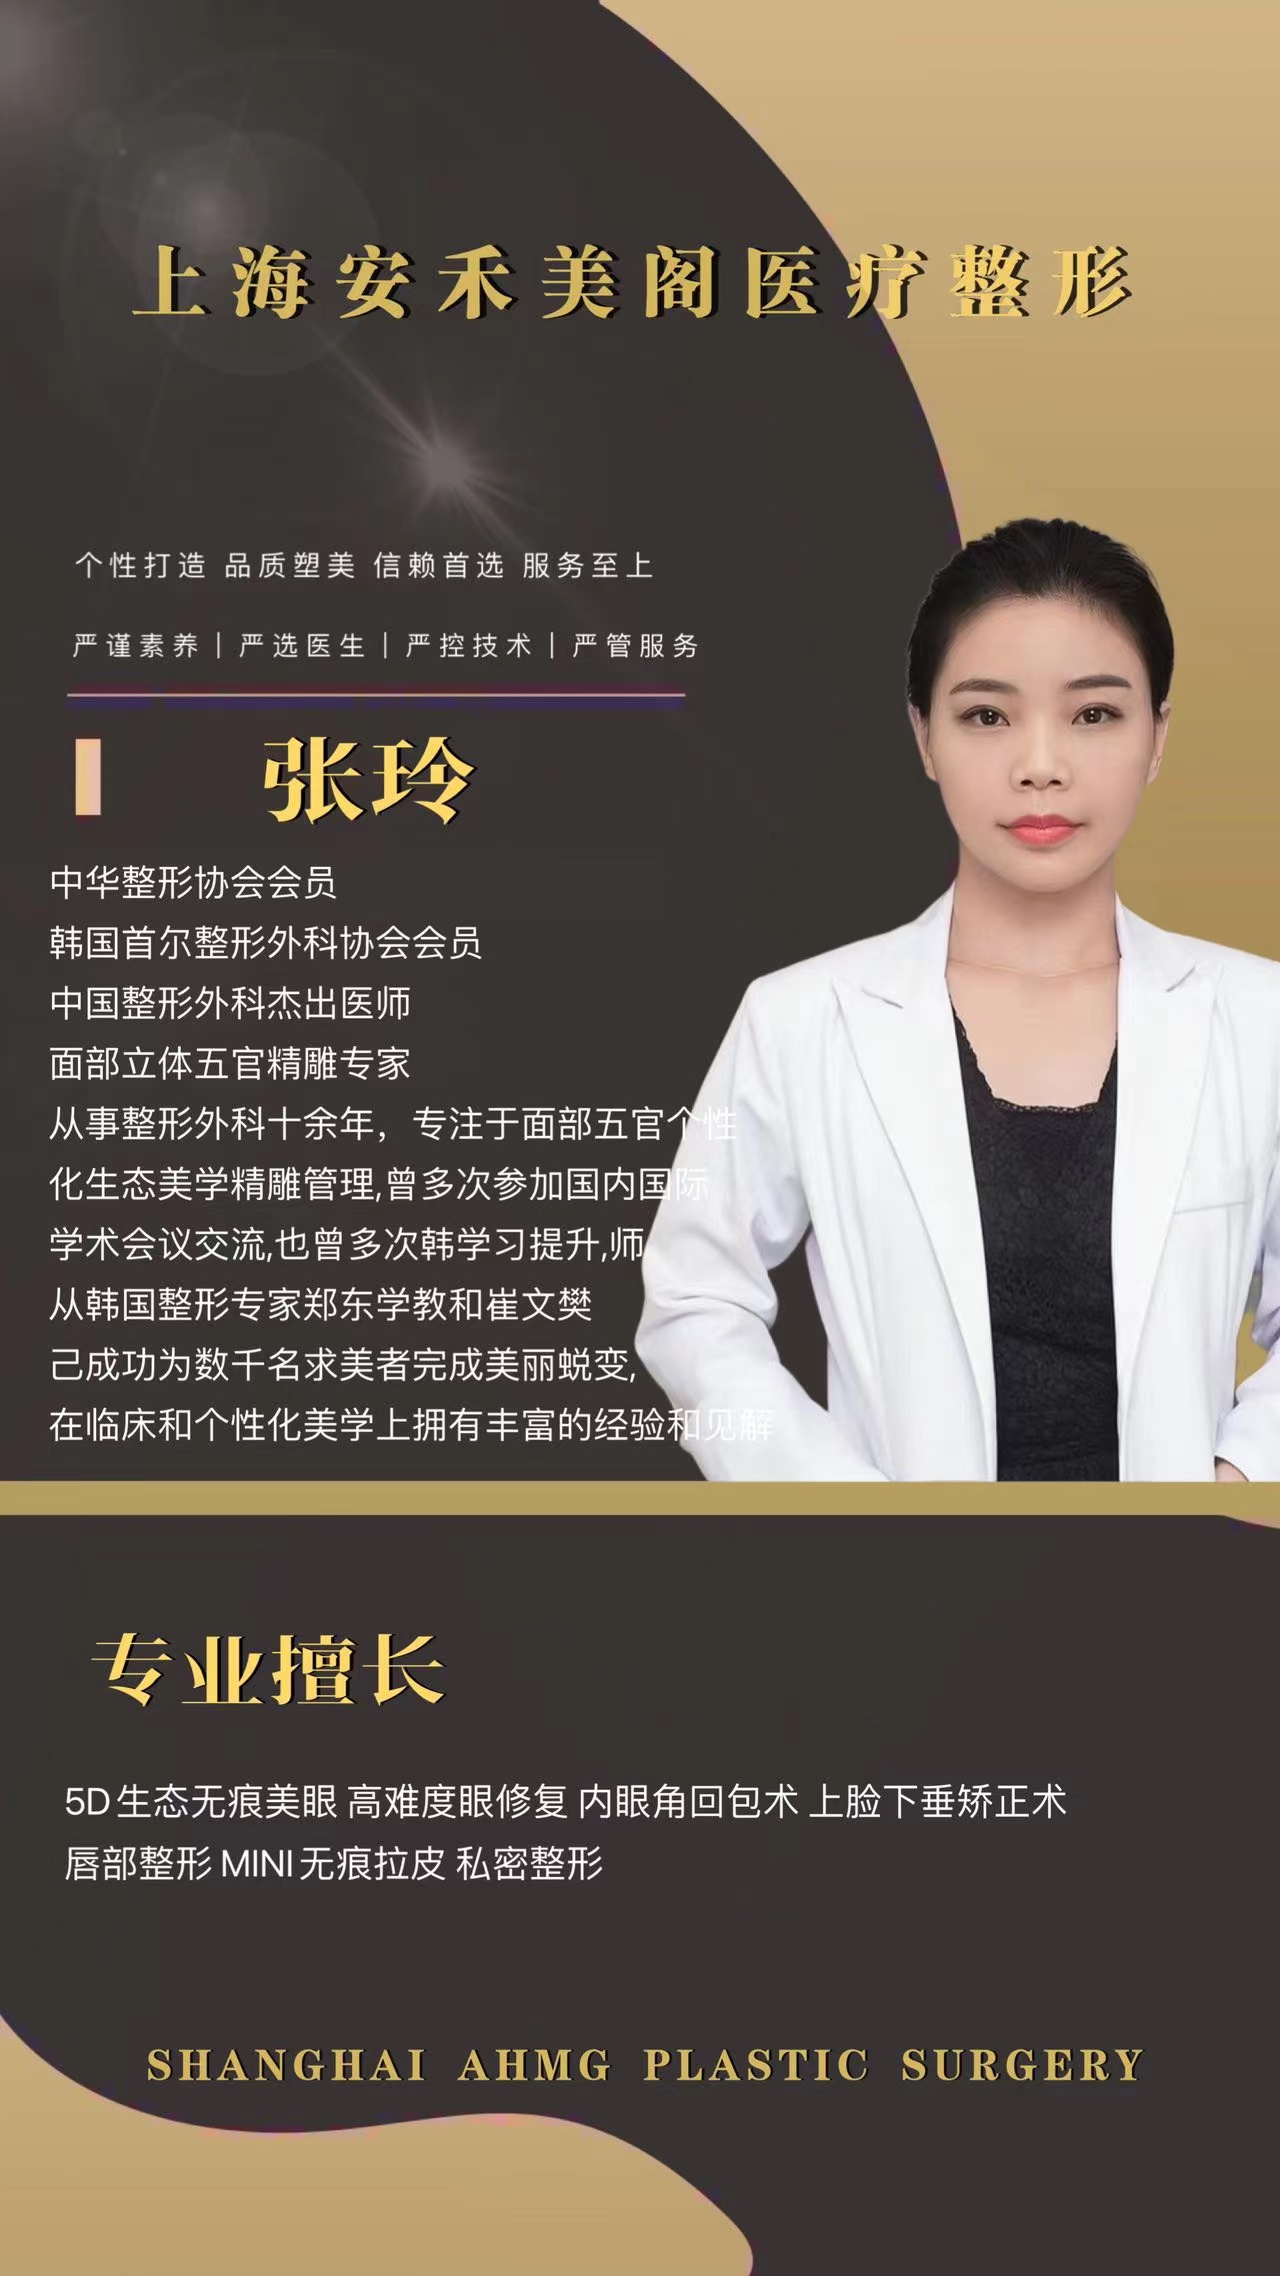 上海安禾美阁医疗整形外科主诊医师张玲